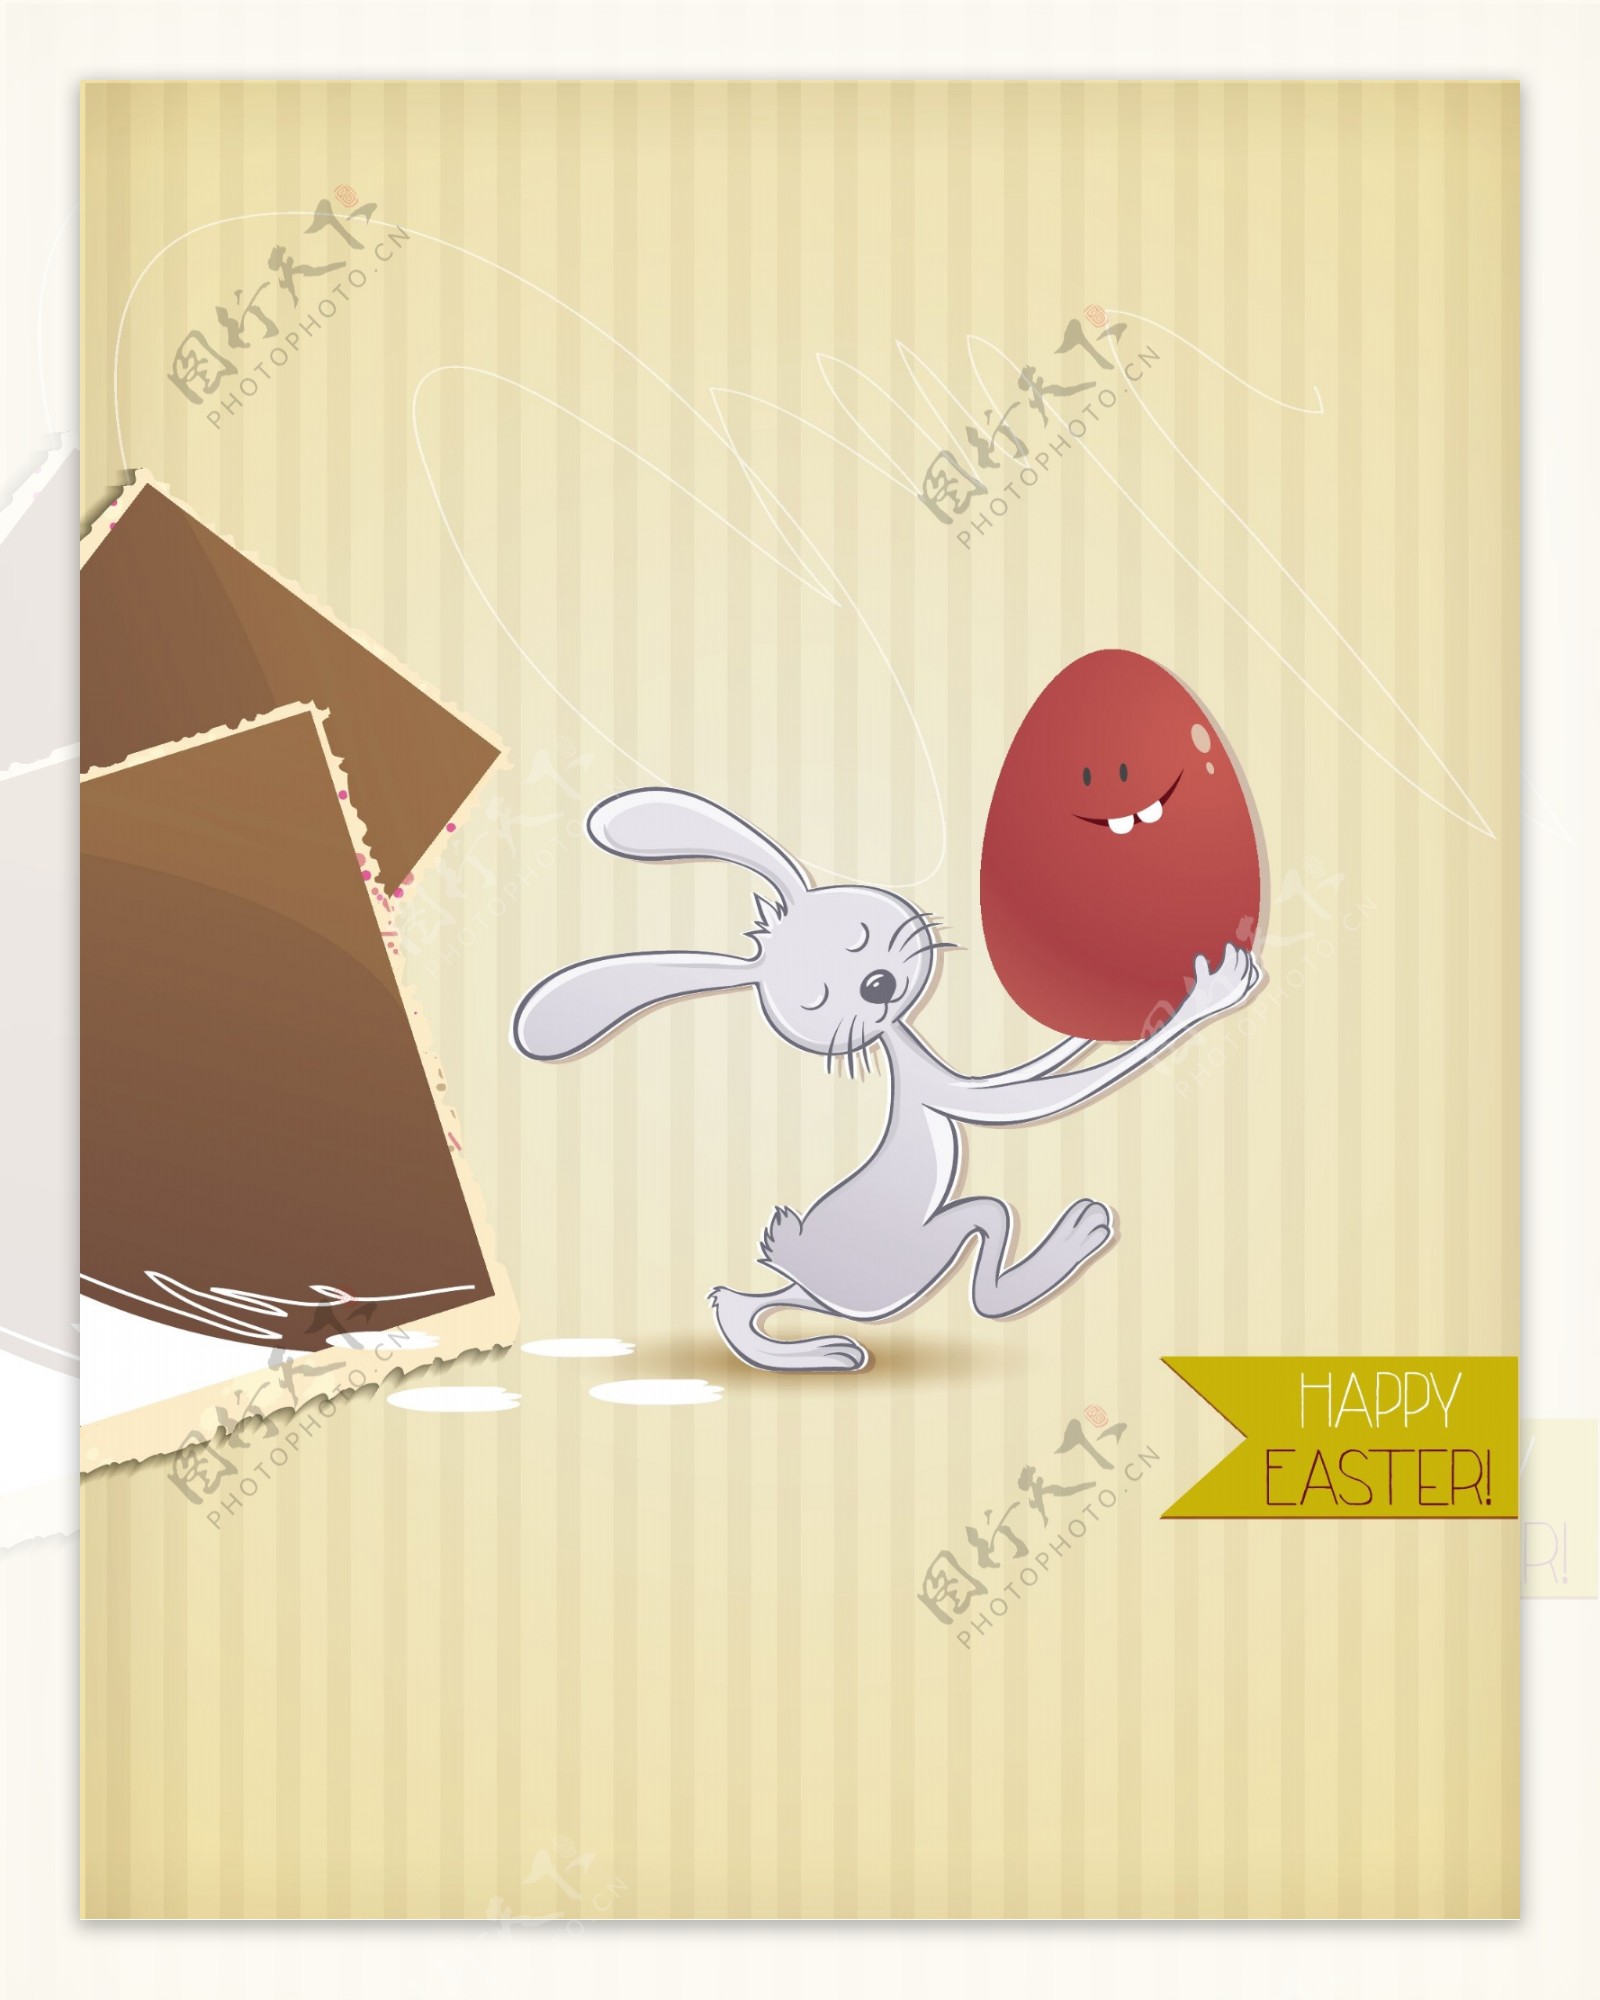 复活节插画与复活节彩蛋和兔子相框